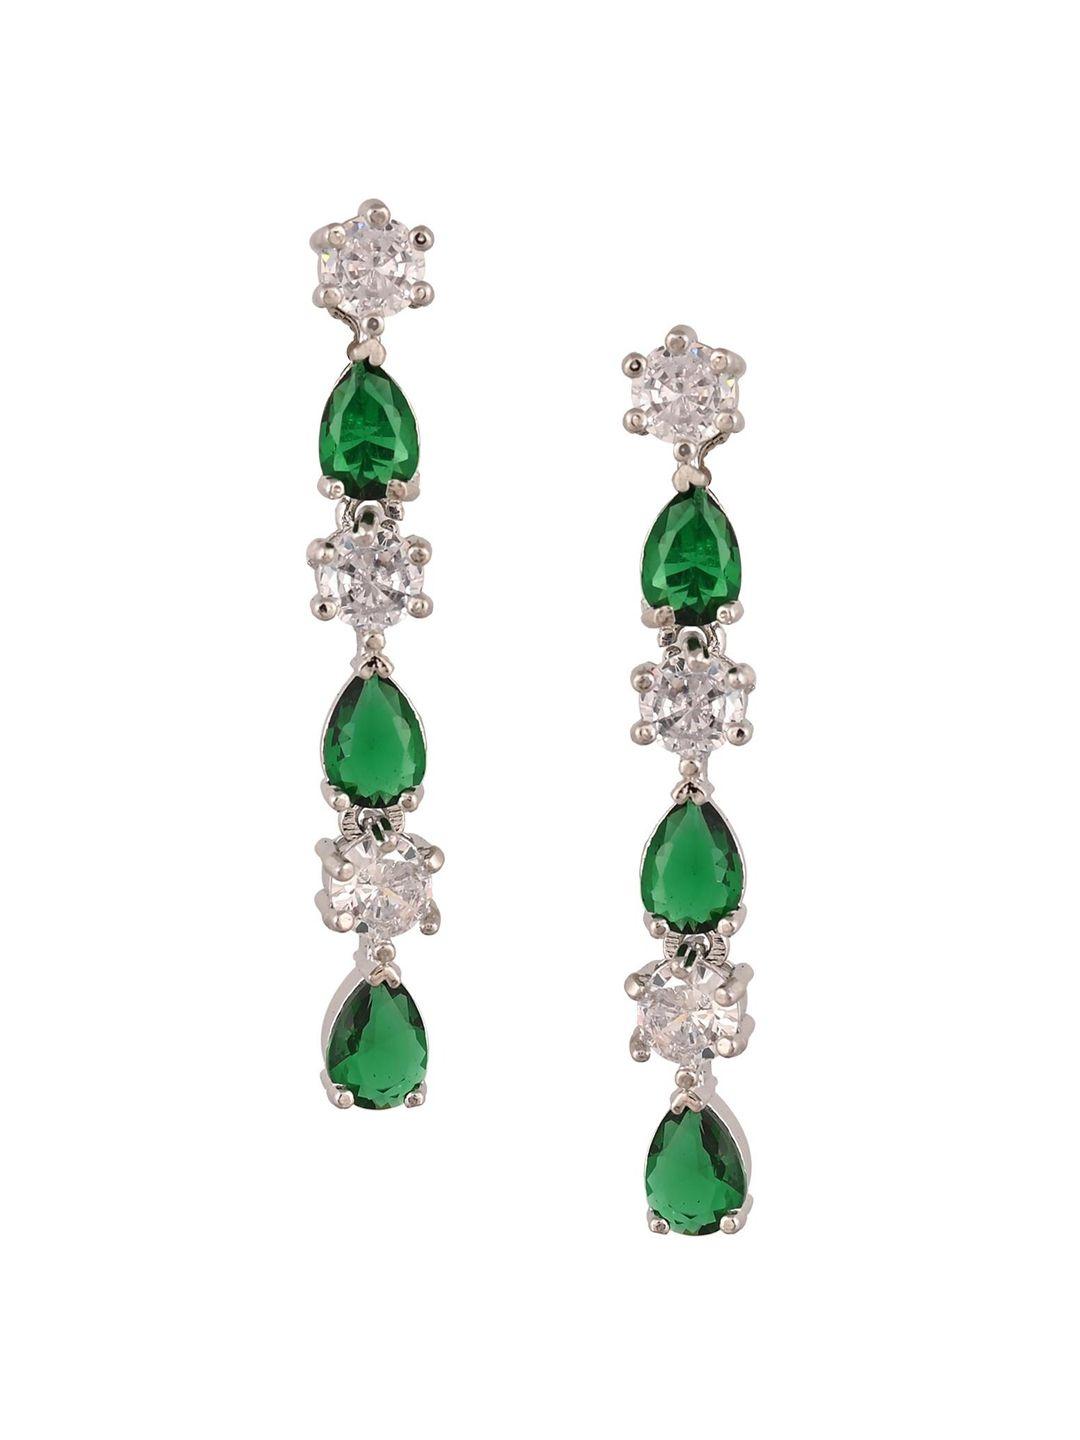 ratnavali jewels silver-plated teardrop shaped drop earrings